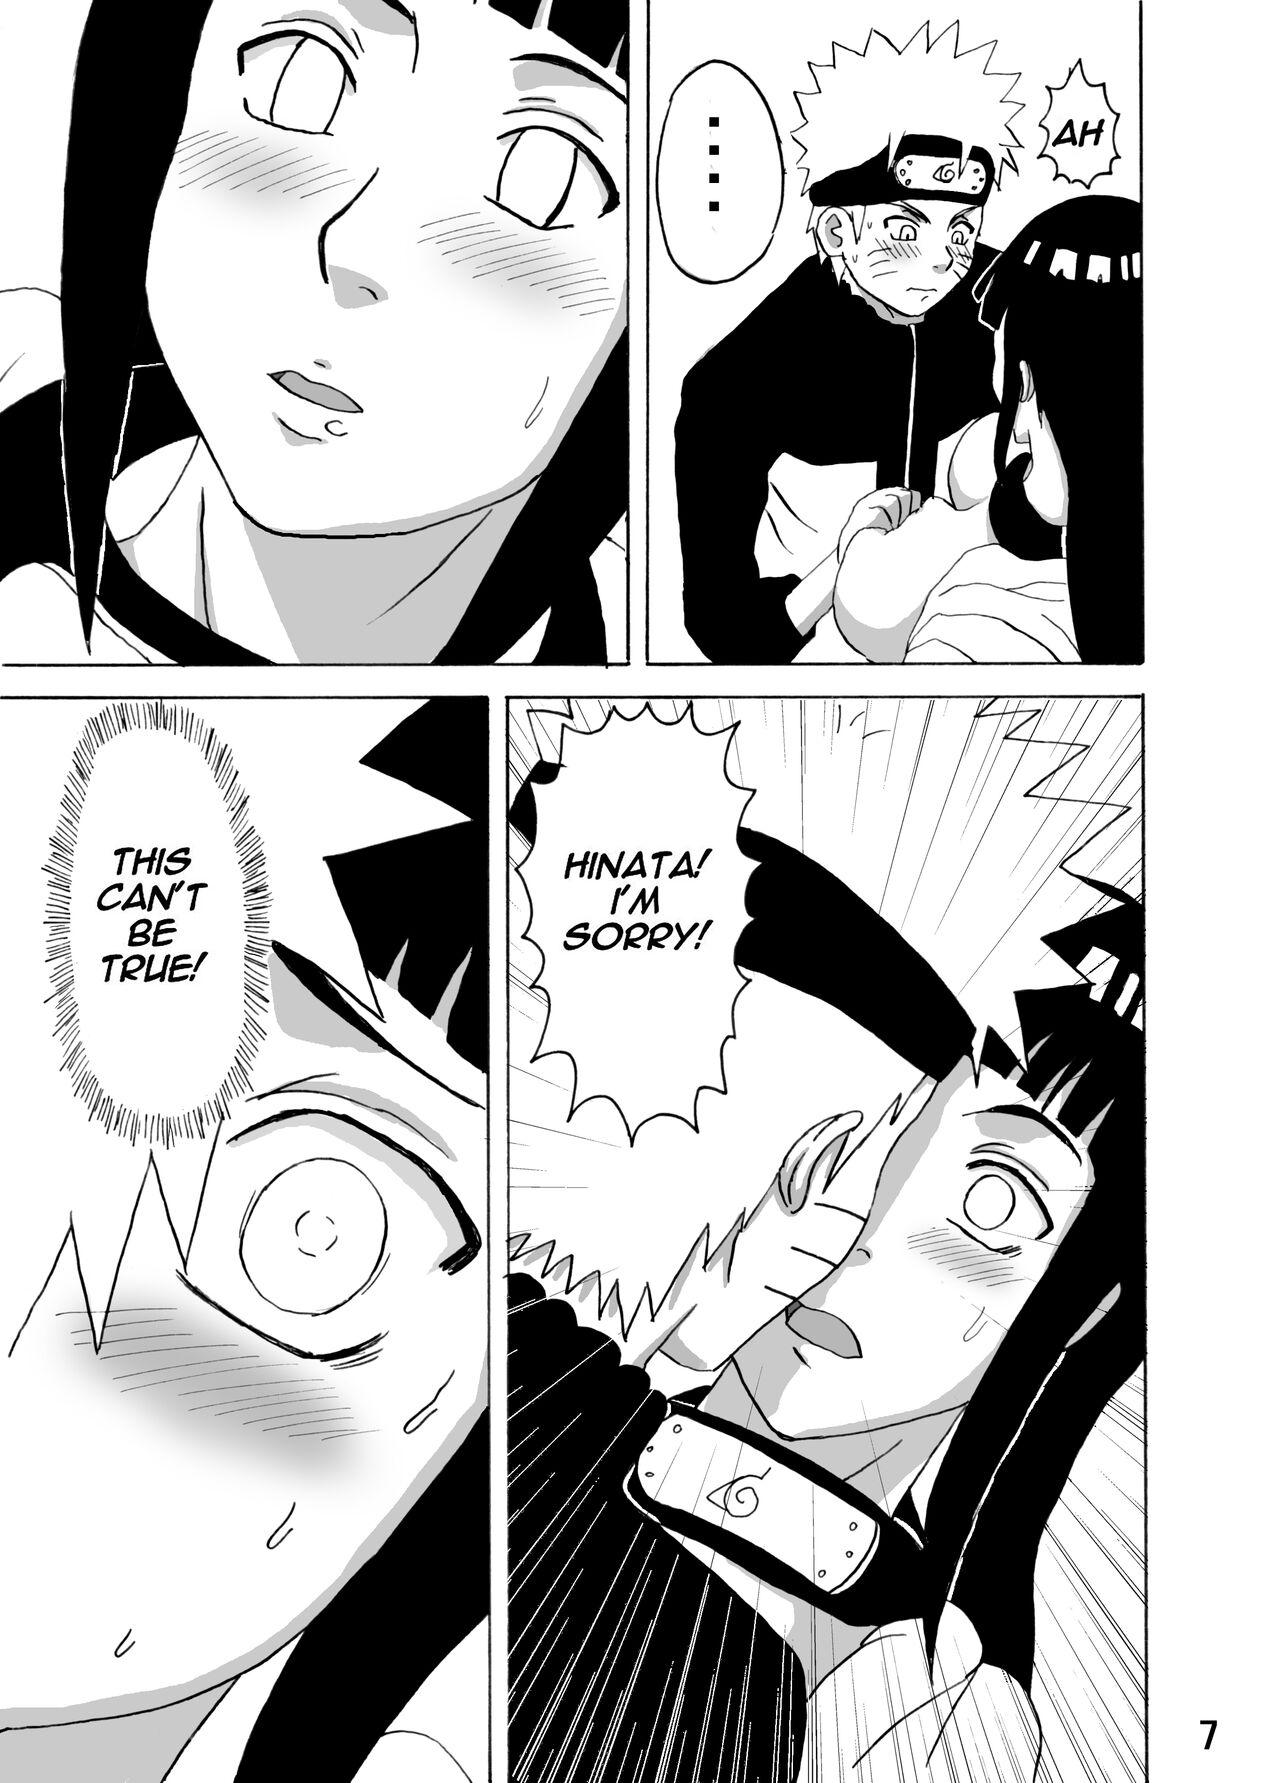 Indo Hinata Ganbaru! | Hinata Fight! - Naruto Exhibitionist - Page 8